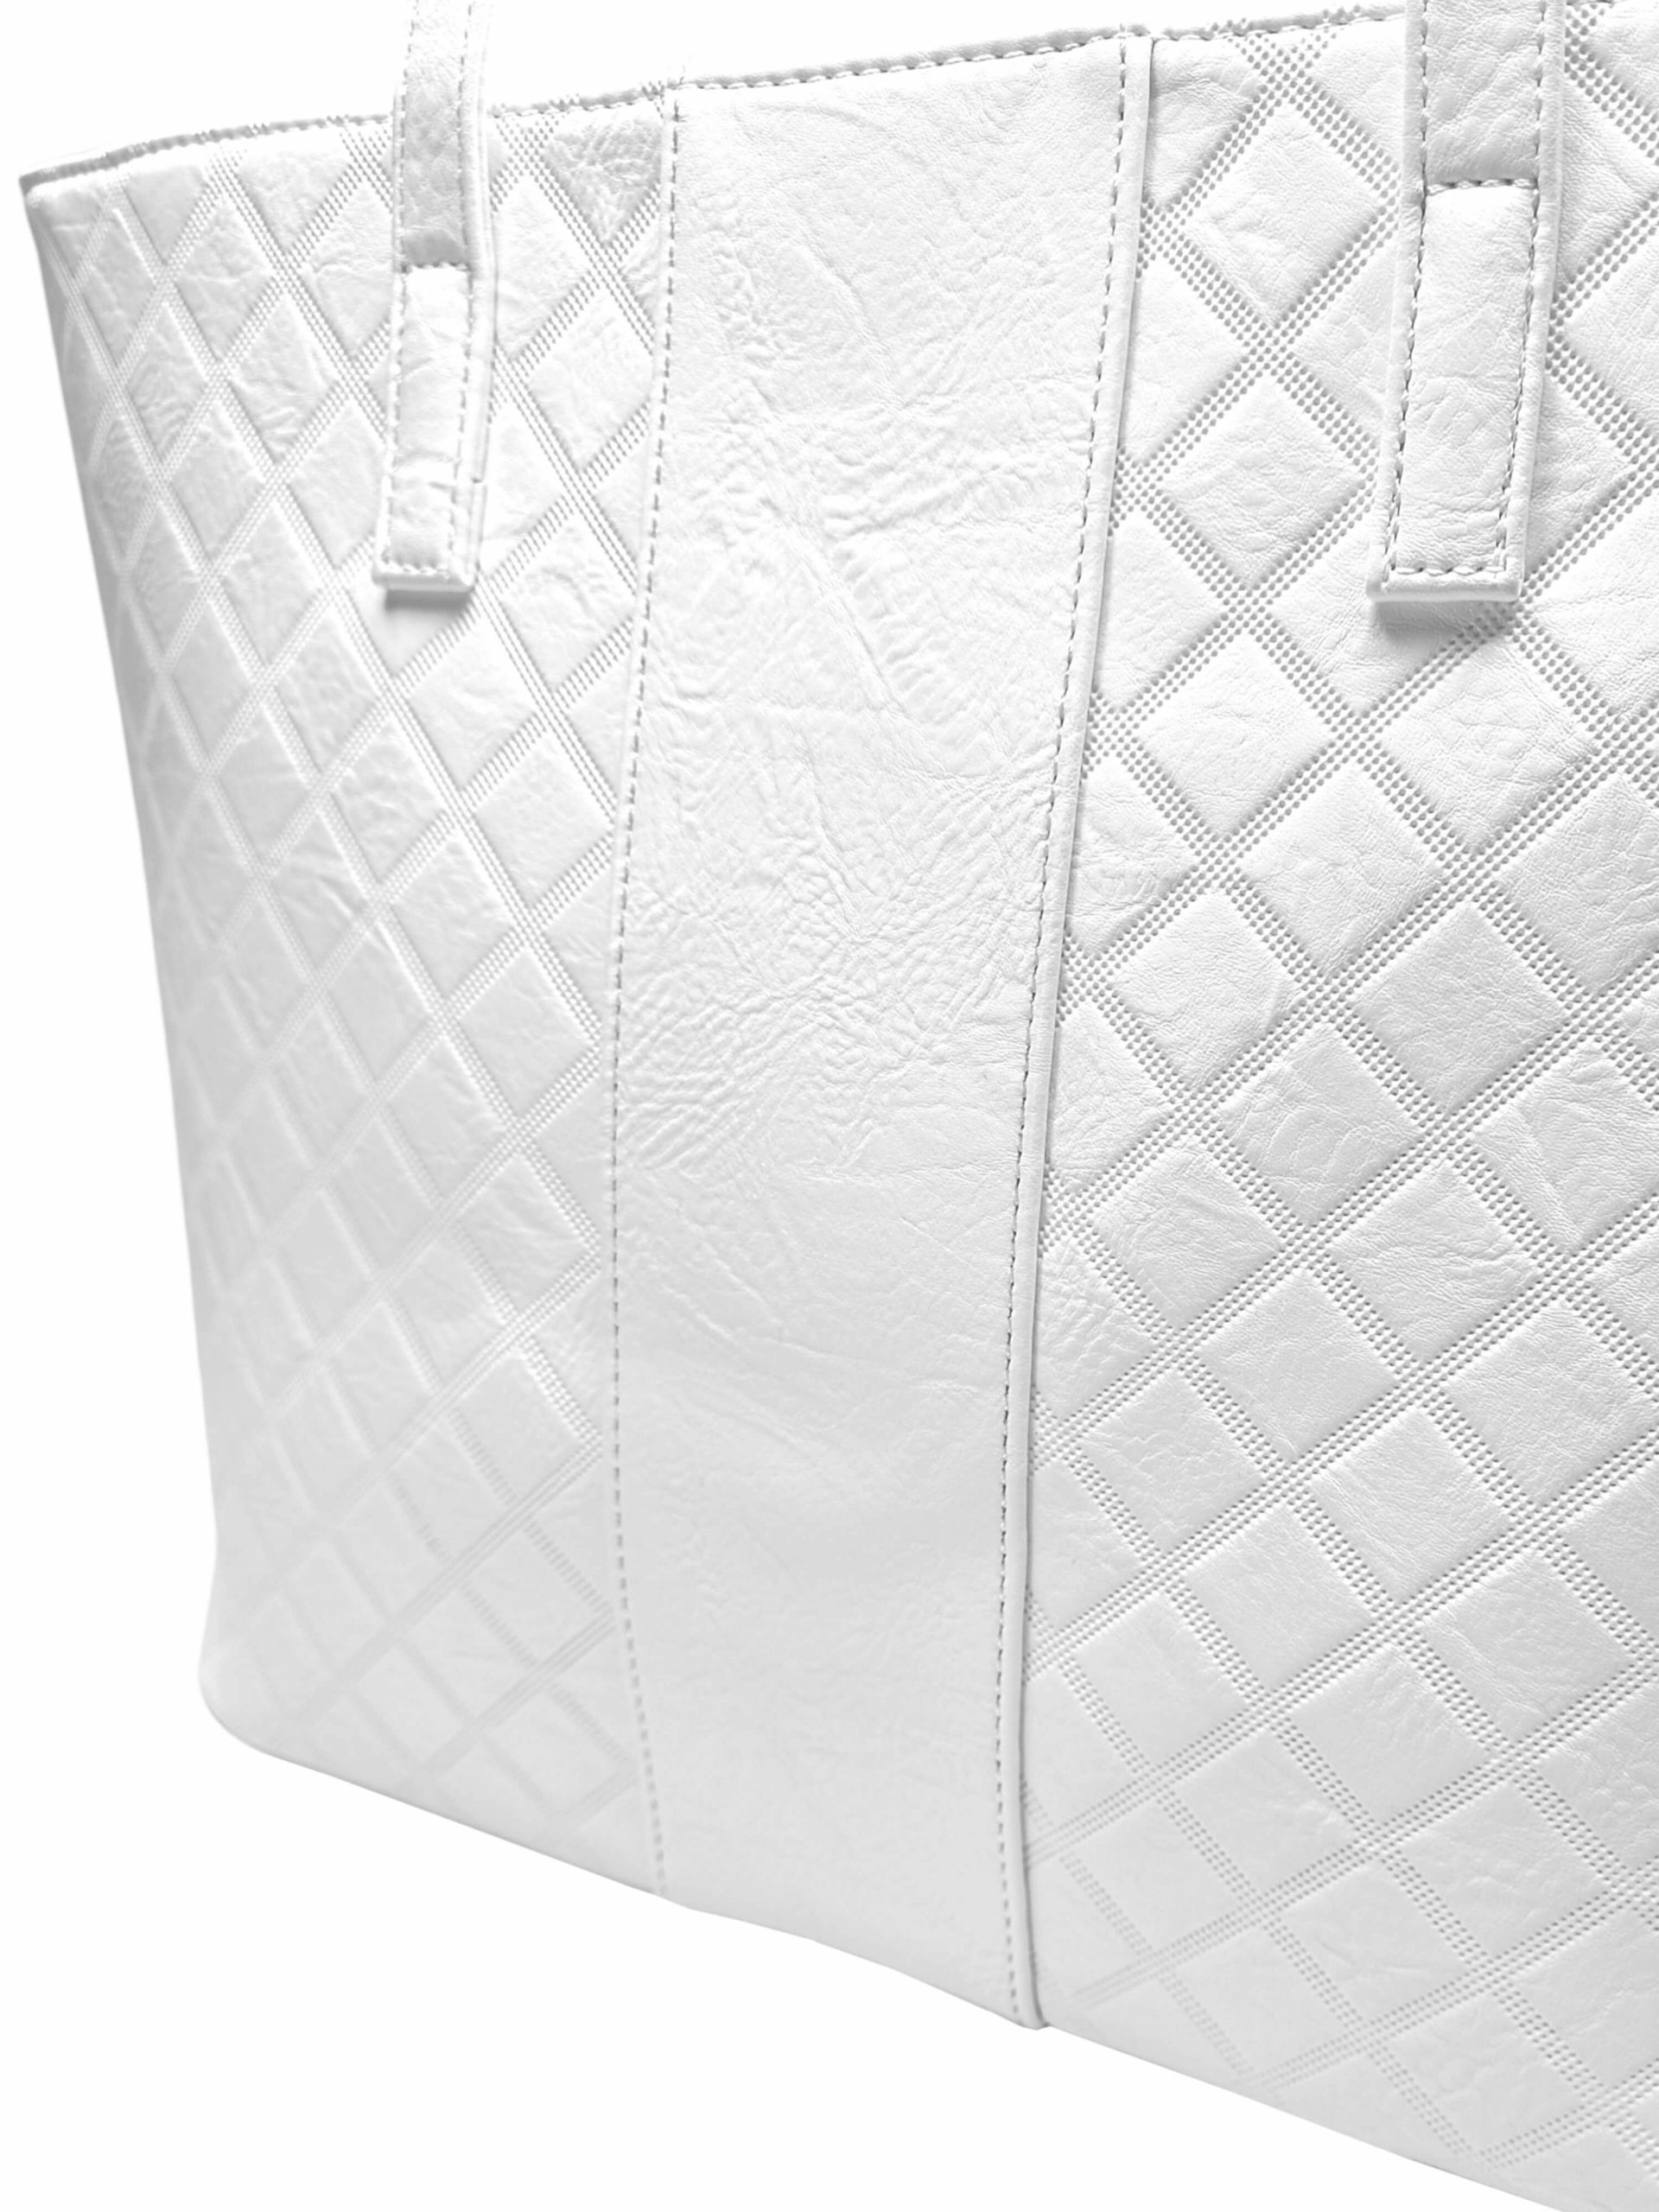 Velká bílá kabelka přes rameno se vzory, Tapple, H22930-1, detail kabelky přes rameno